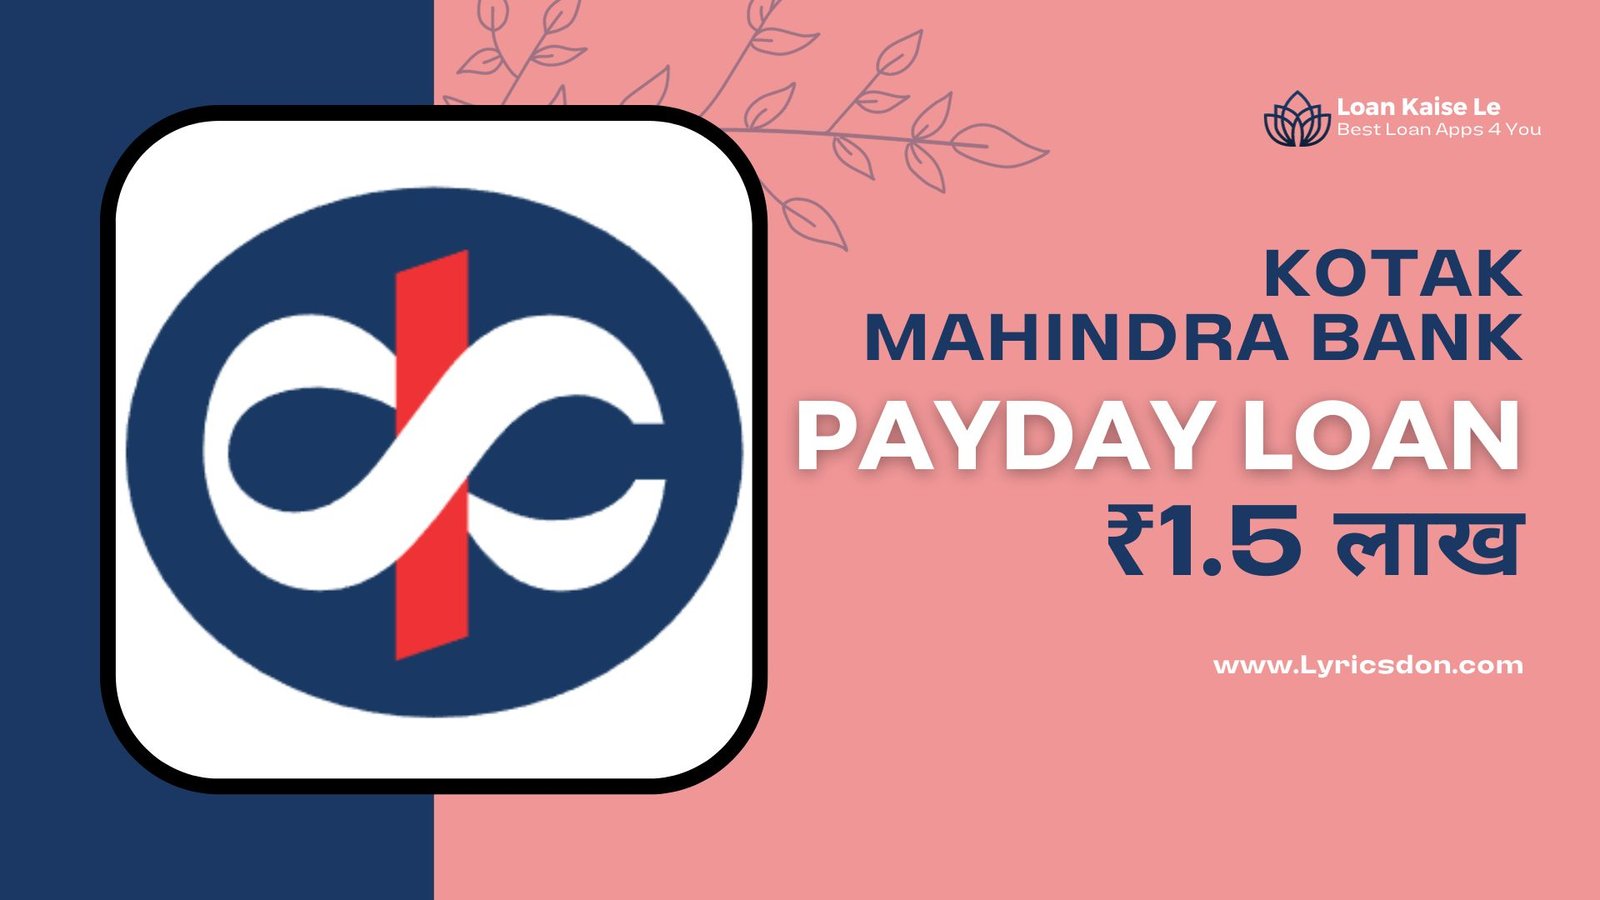 Kotak Mahindra Bank PayDay Loan Amount